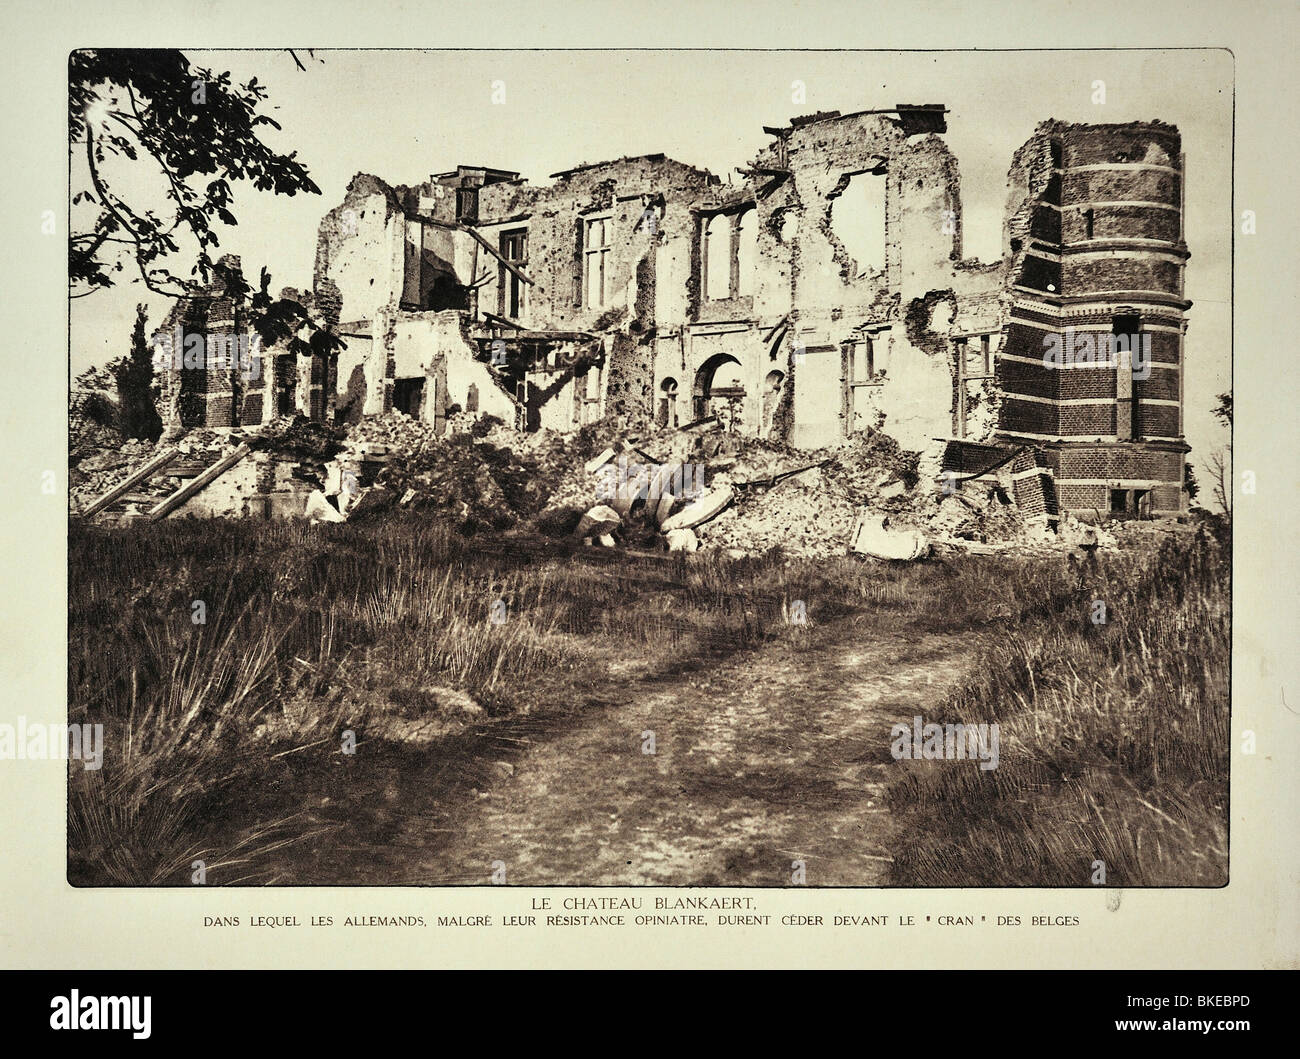 Ruinen der Burg De Blankaart bei Woumen nach WWI Bombardement in West-Flandern während des ersten Weltkriegs ein, Belgien Stockfoto